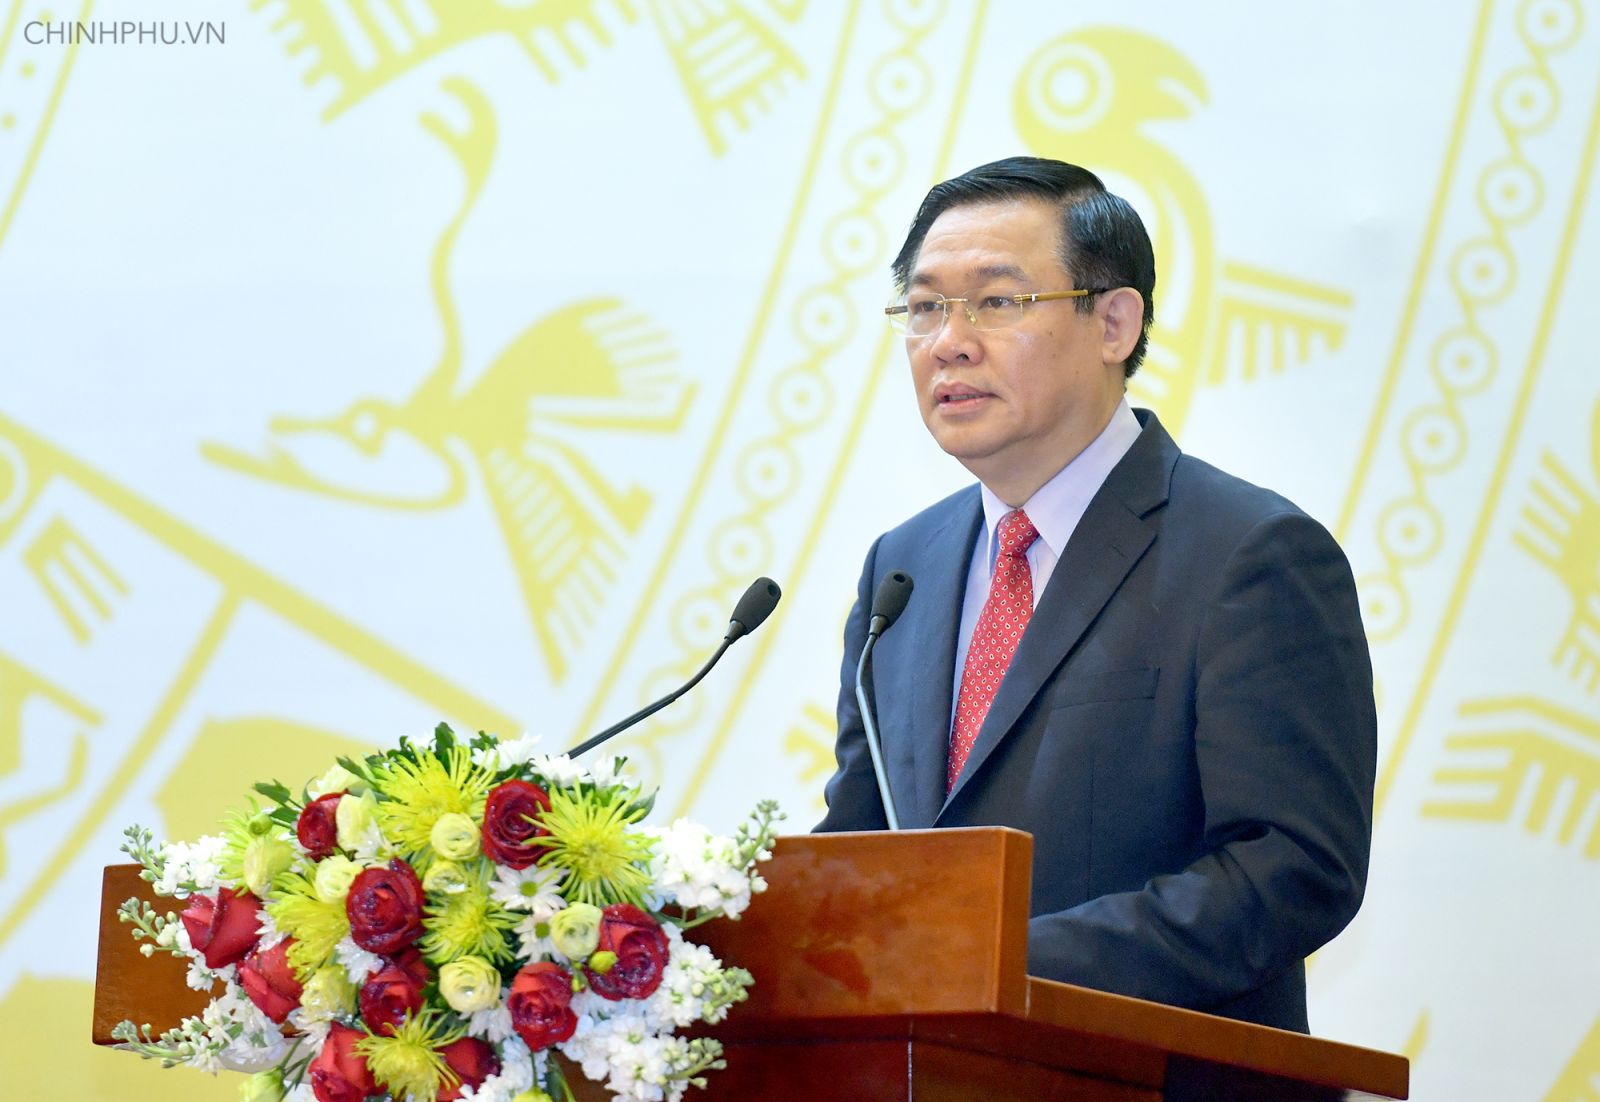 Phó Thủ tướng Vương Đình Huệ phát biểu khai mạc Hội nghị. Ảnh: VGP/Quang Hiếu